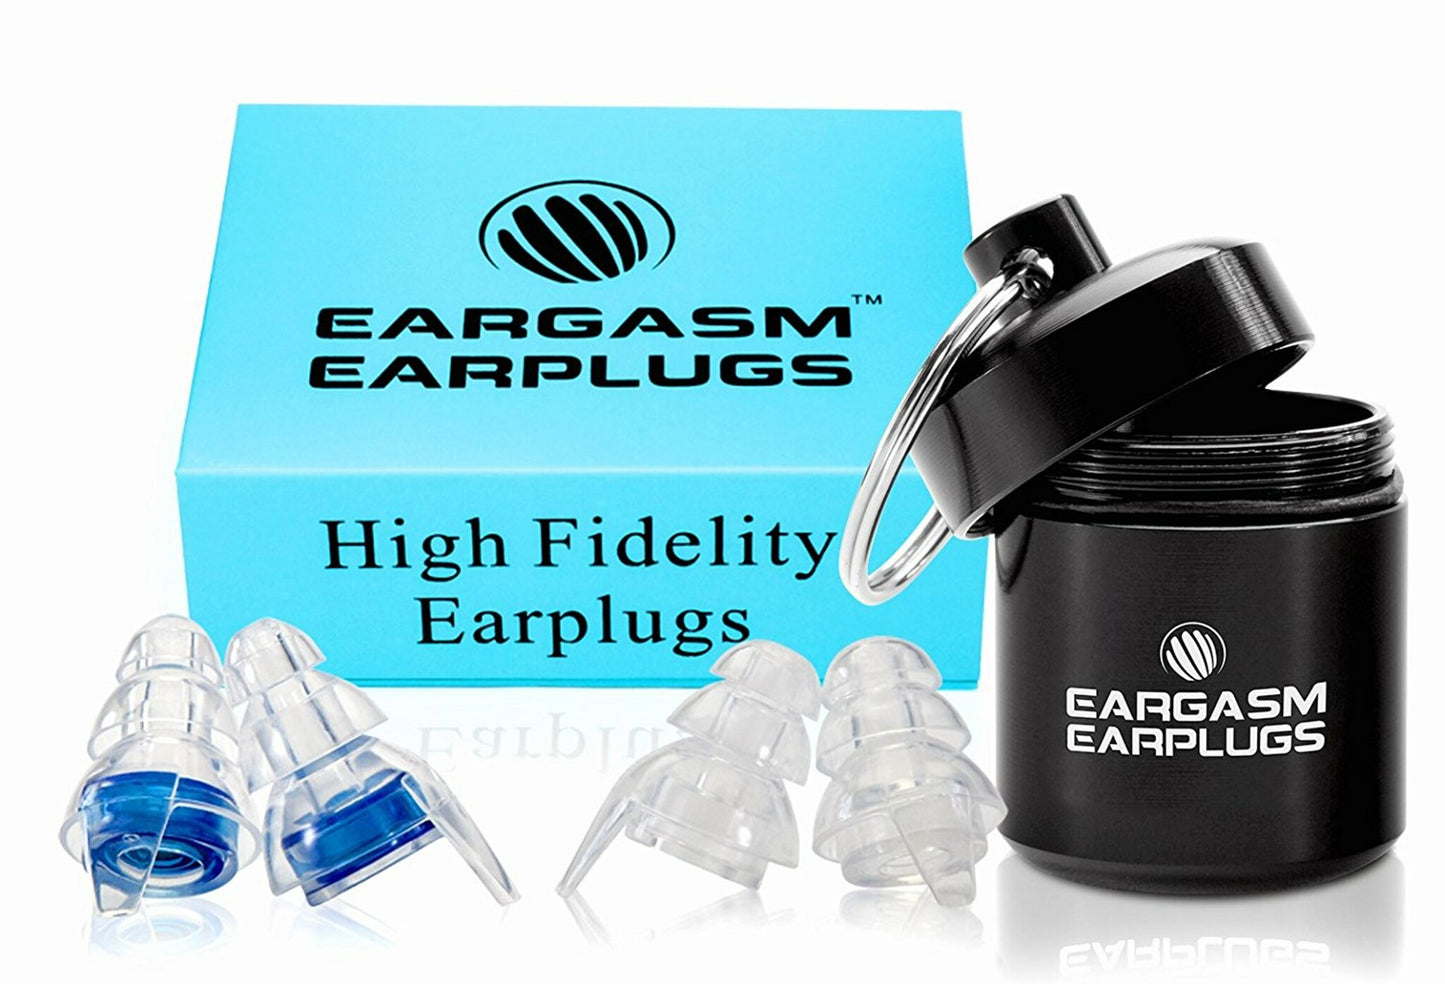 EARGASM HIGH FIDELITY EARPLUGS - SMALLER EARS OR STANDARD SIZE